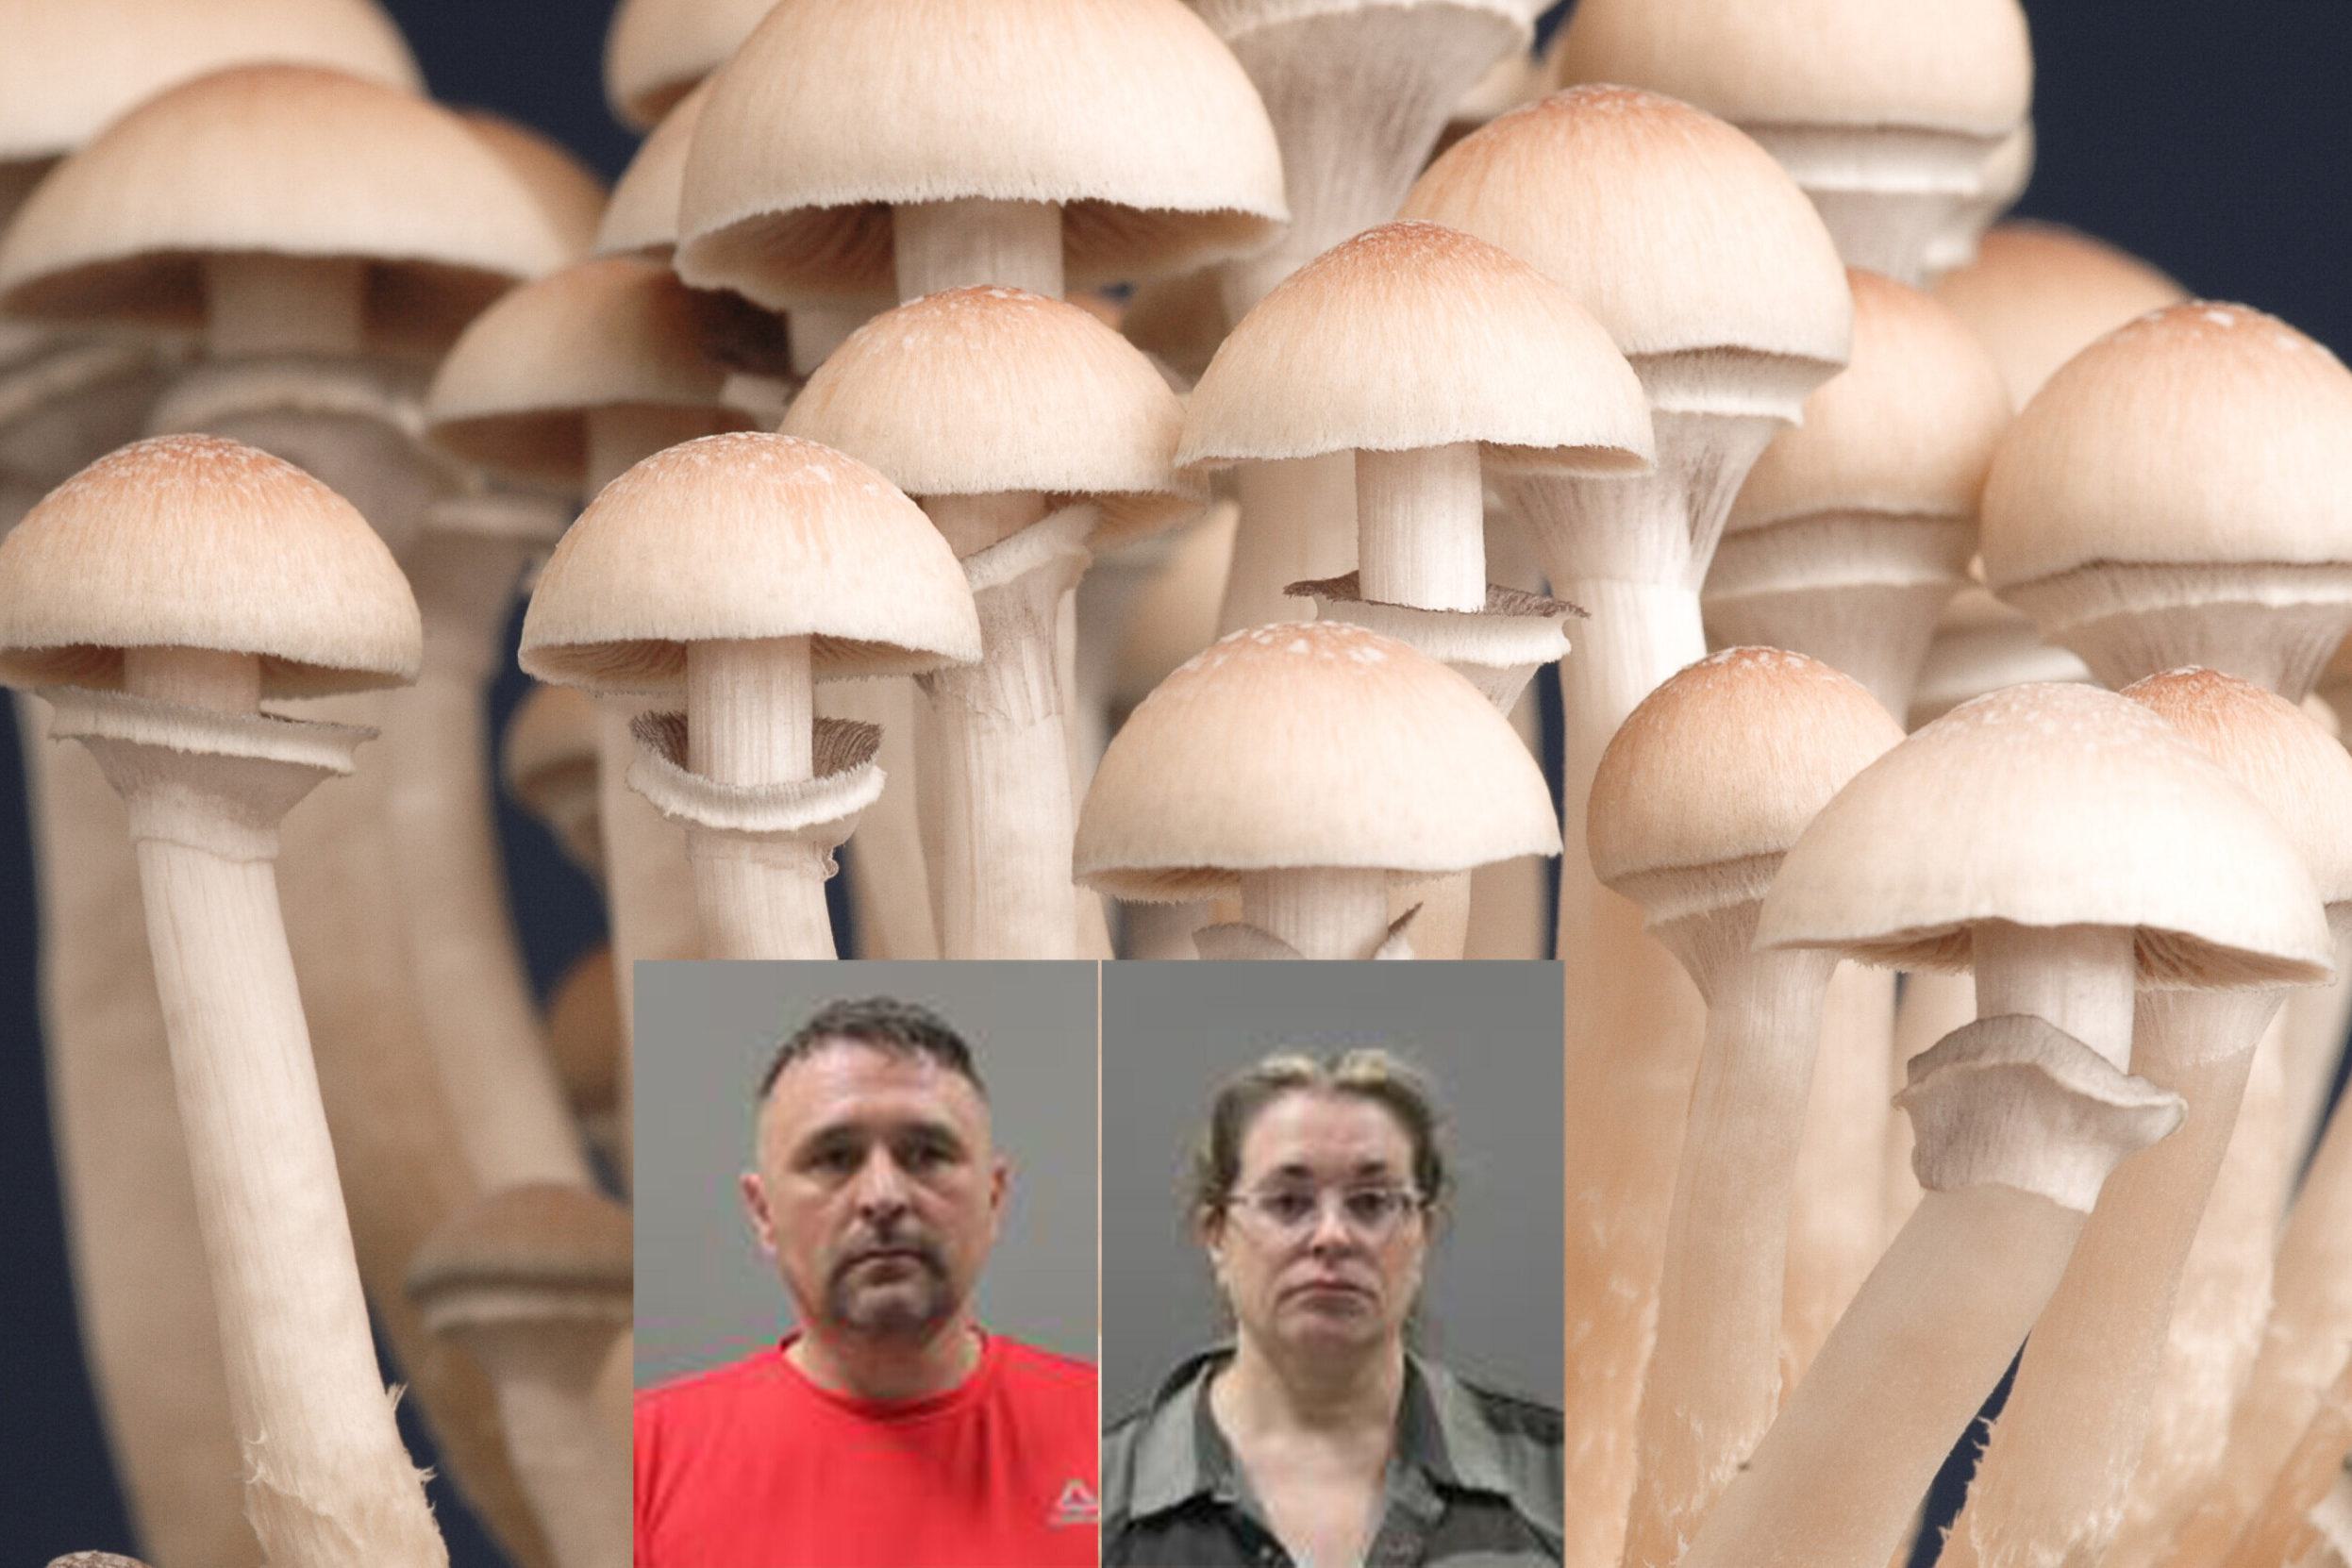 Limestone Mushroom arrest.